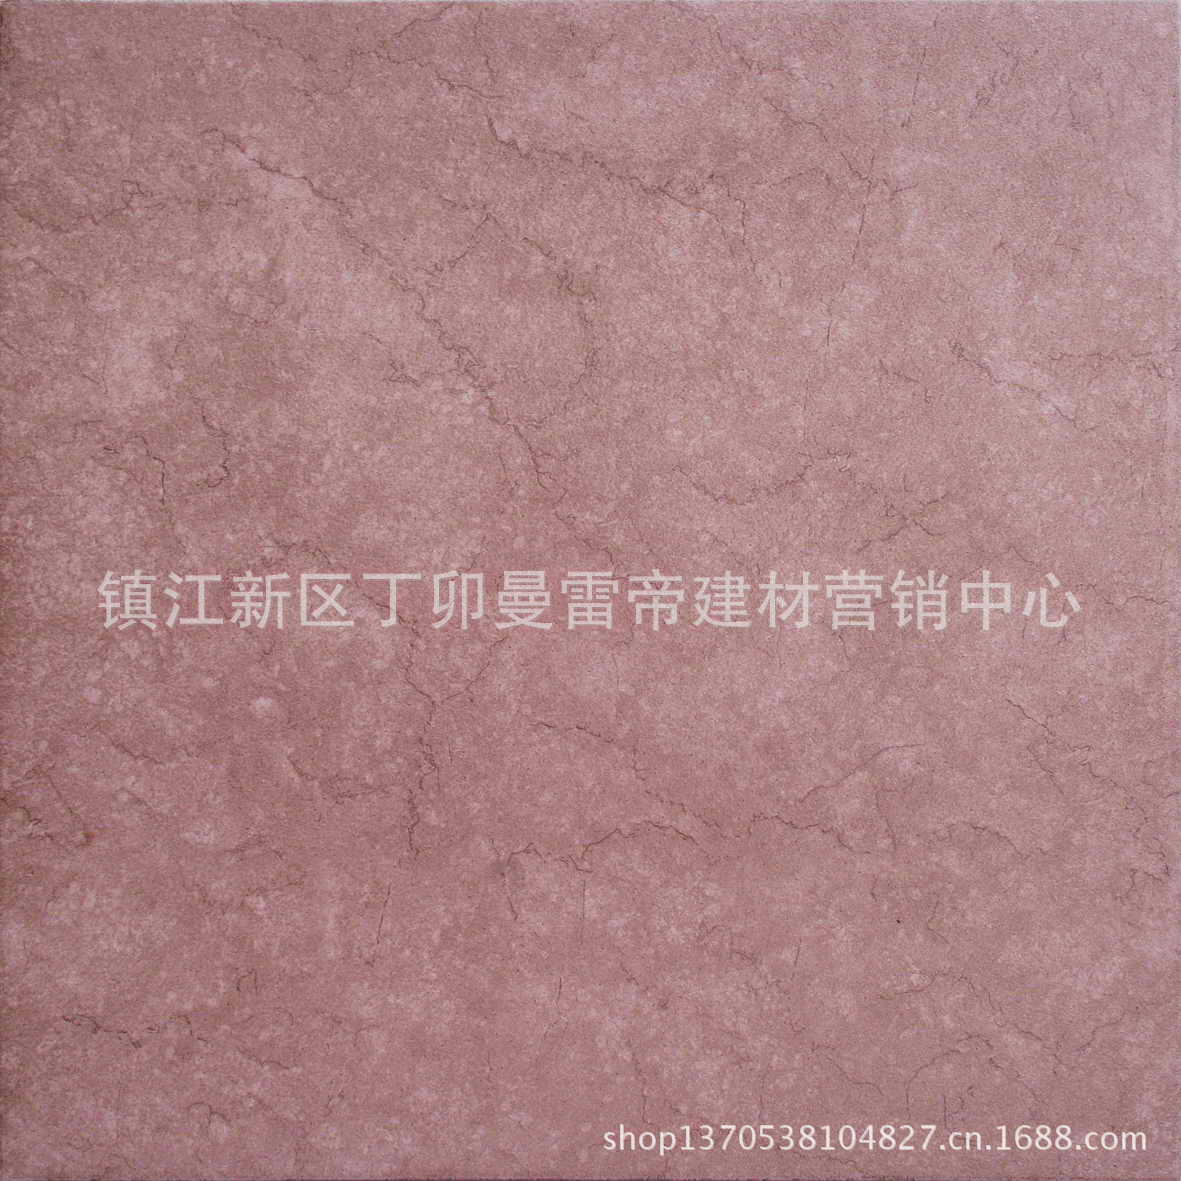 【镇江曼联磁砖 供应优质瓷砖新600 品牌产品